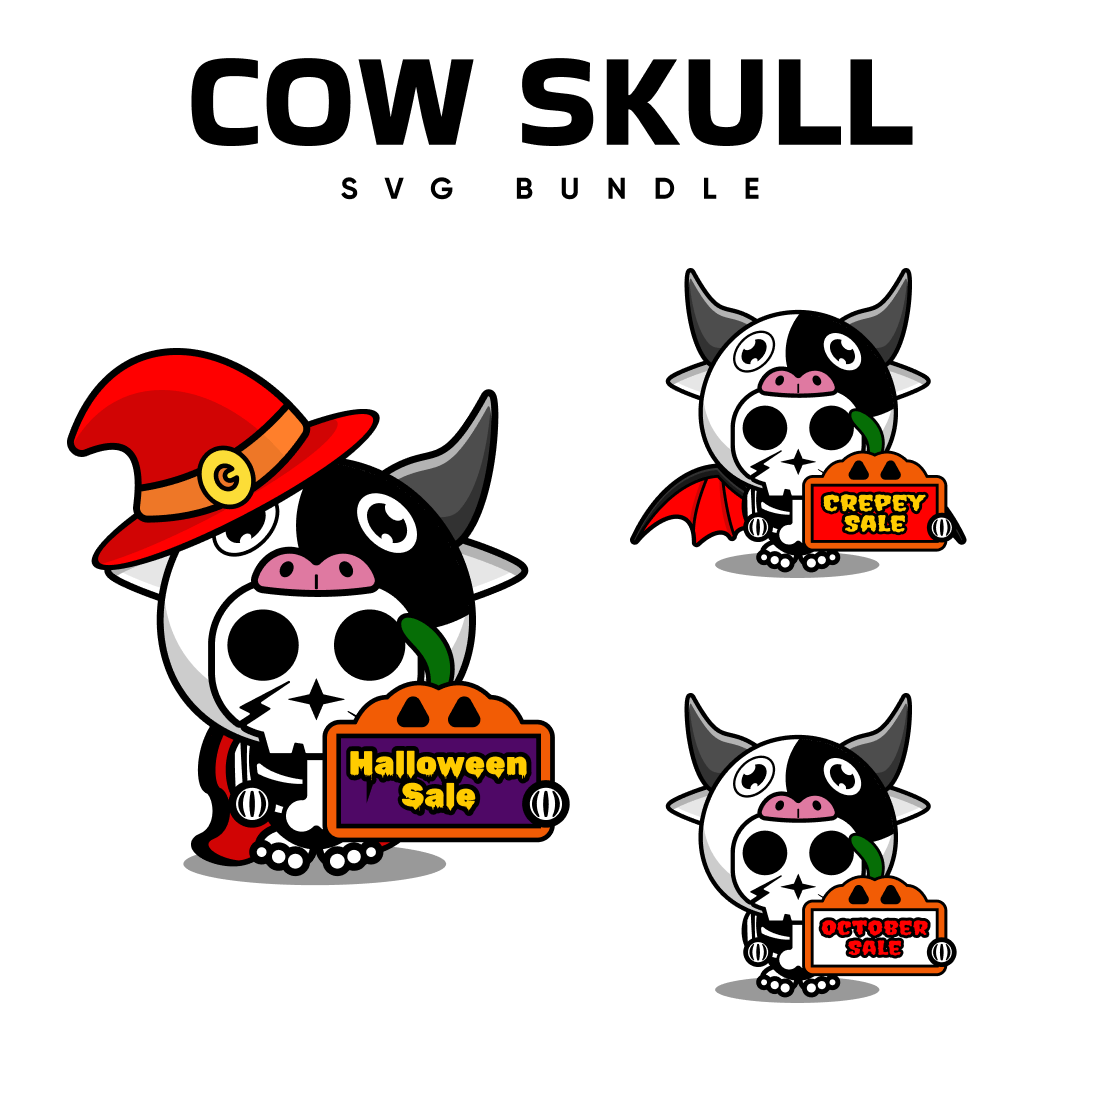 Cow skull svg bundle for halloween sale.